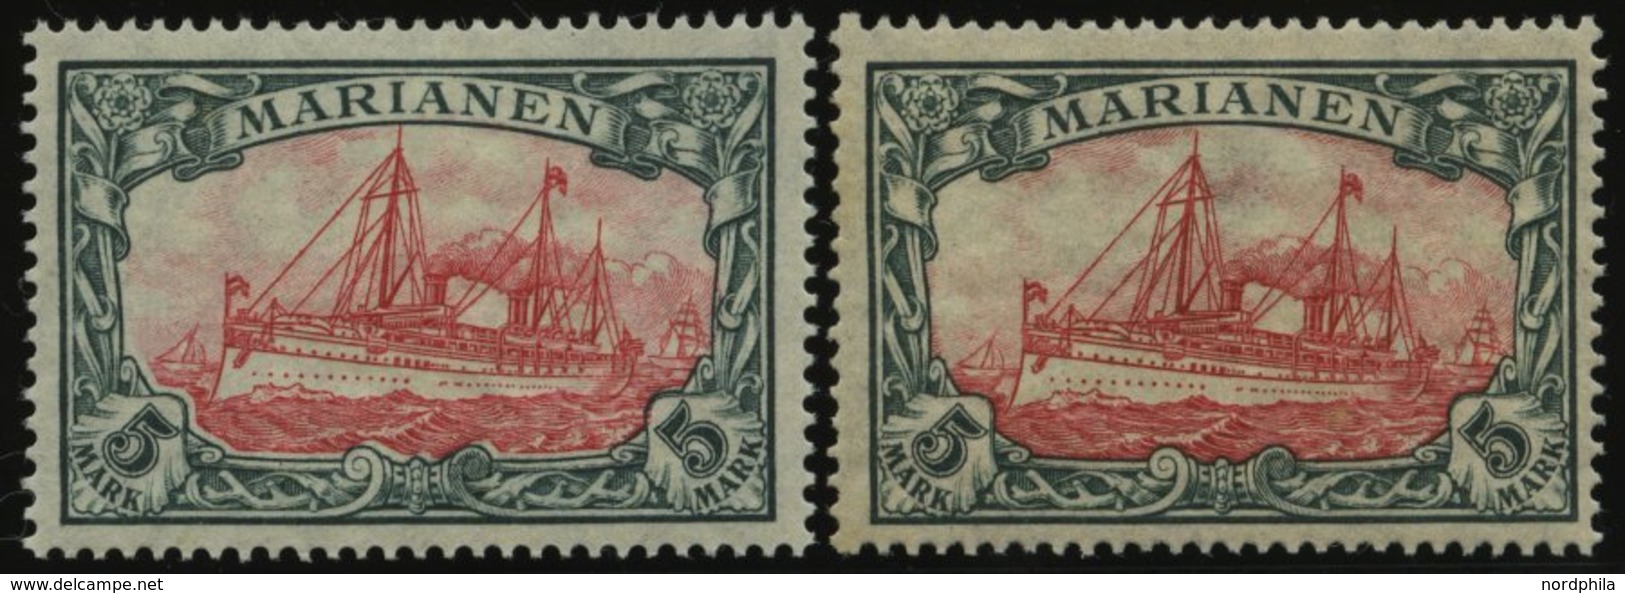 MARIANEN 21A/B *, 1916, 5 M., Mit Wz., Beide Zähnungen, Falzrest, 2 Prachtwerte, Mi. 90.- - Islas Maríanas